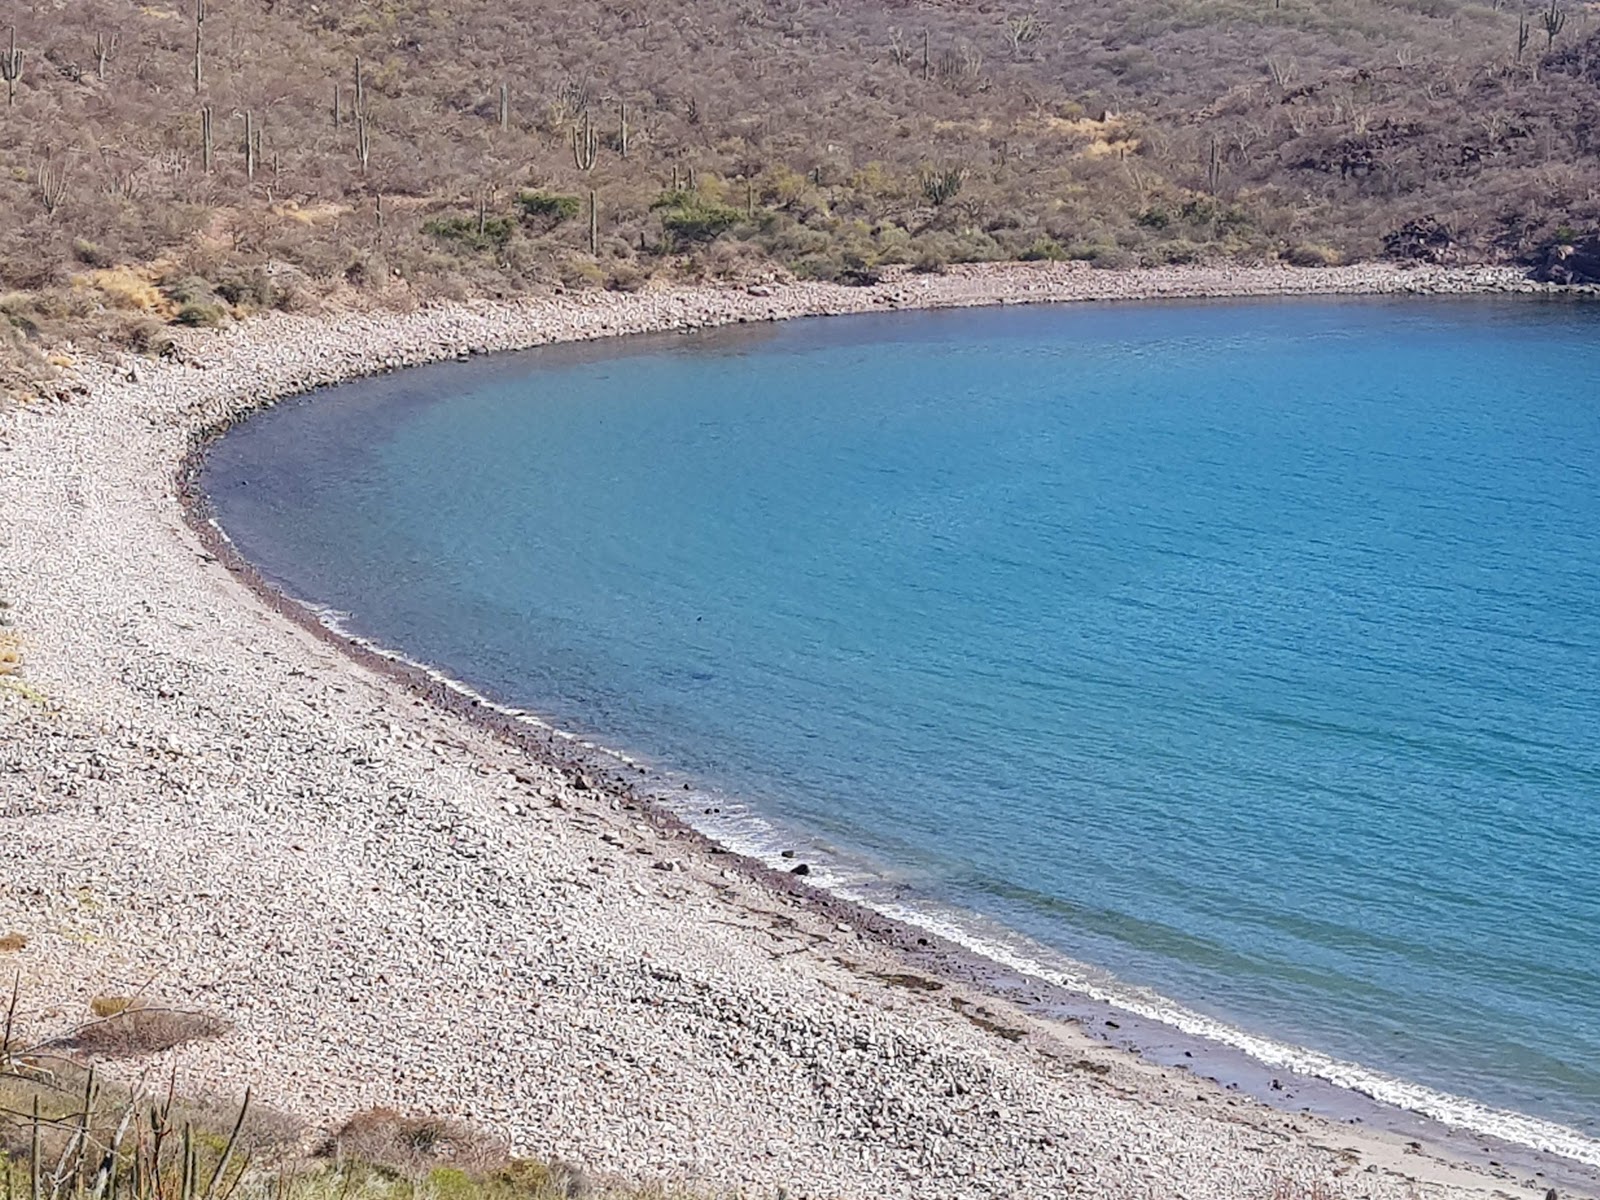 Fotografie cu El carricito beach cu o suprafață de pietricel cenușiu